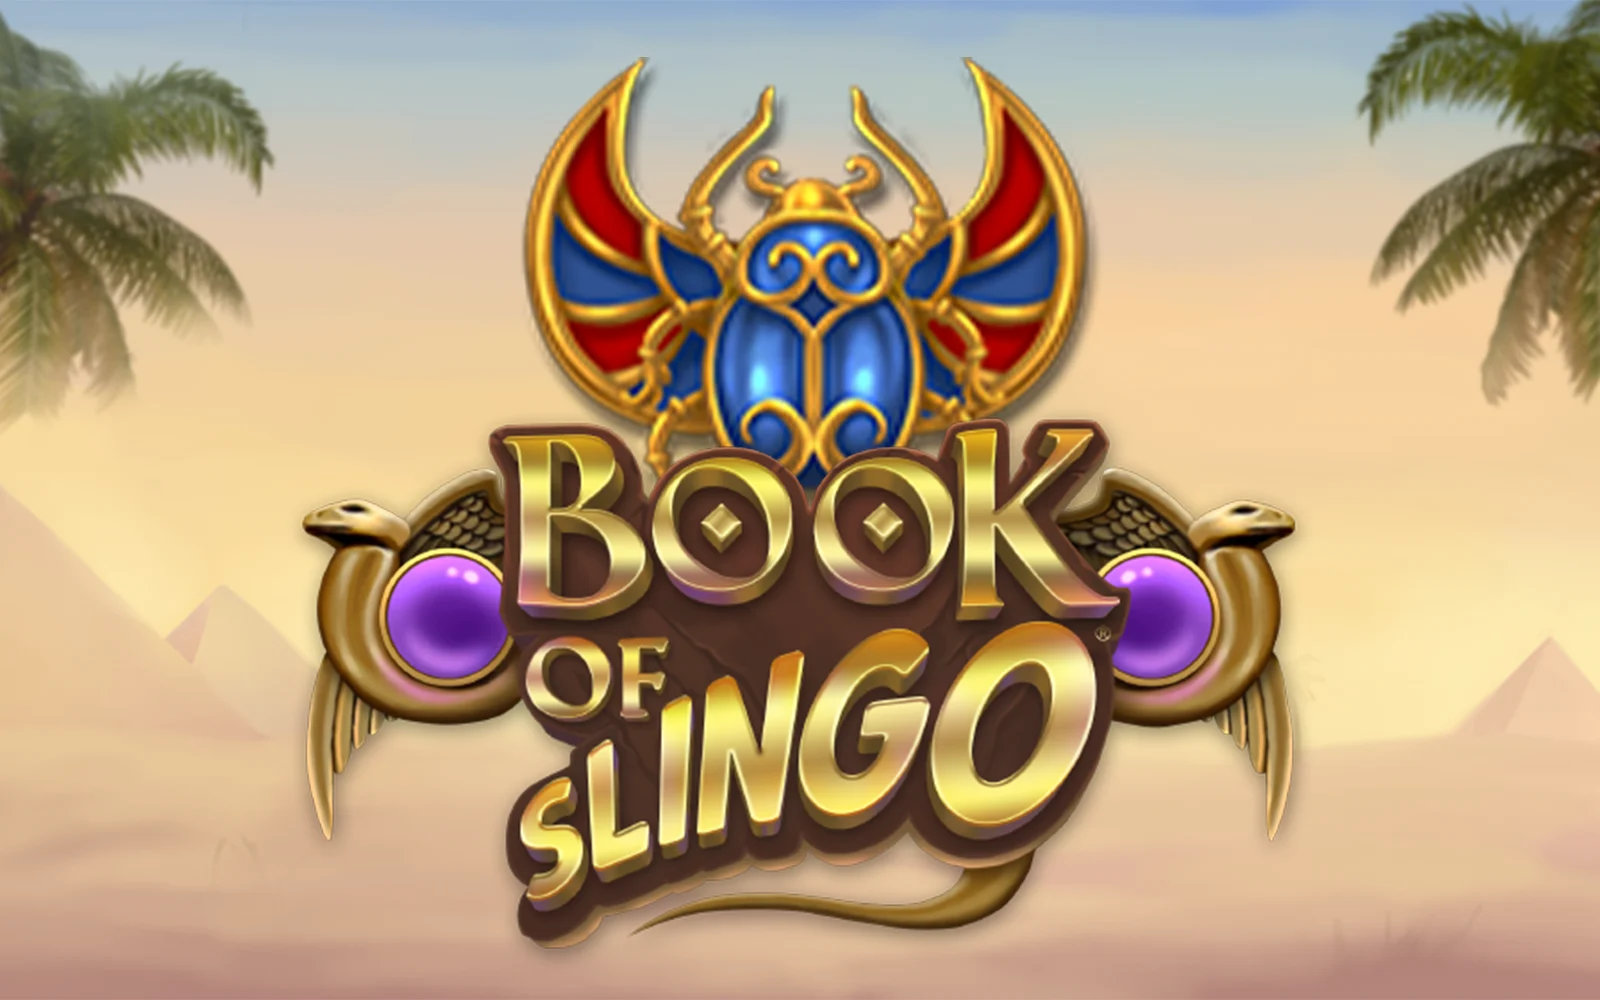 Luaj Book of Slingo në kazino Starcasino.be në internet